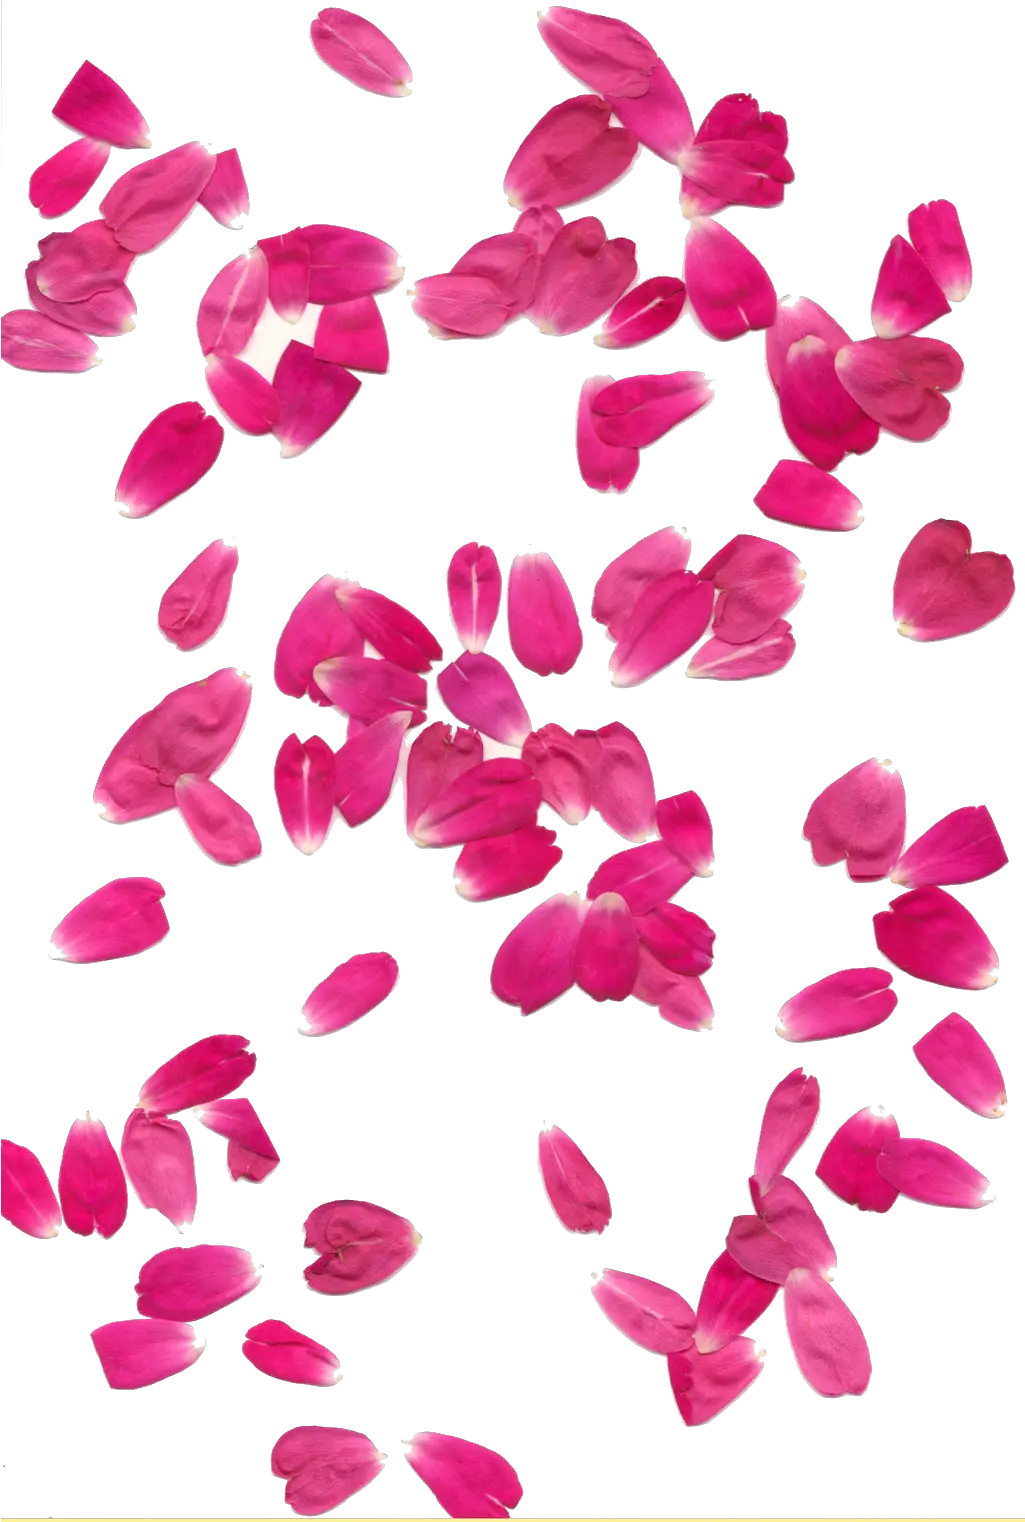 Transparent Background Hq Png Image Transparent Background Pink Flower Petals Png Roses Transparent Background